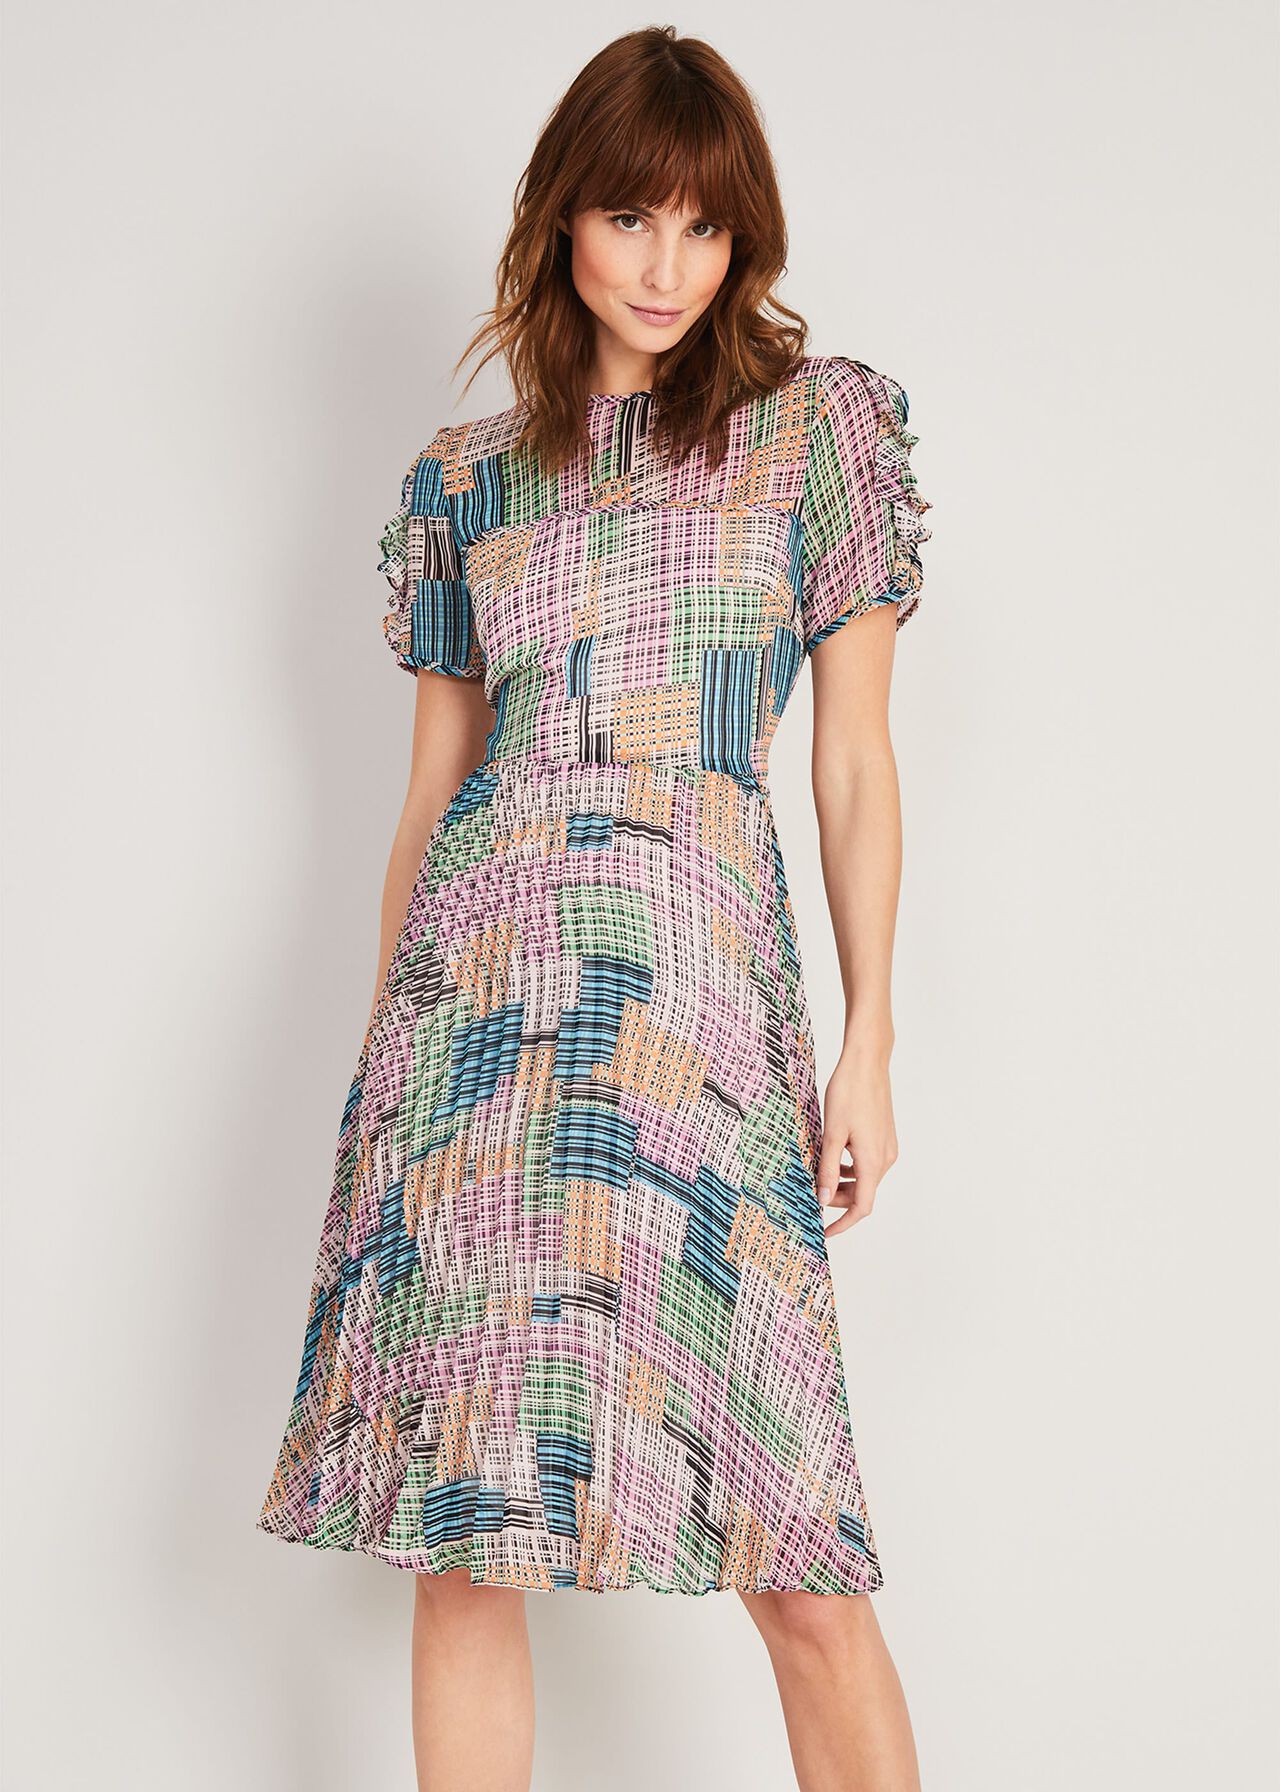 Anatasia Woven Print Dress